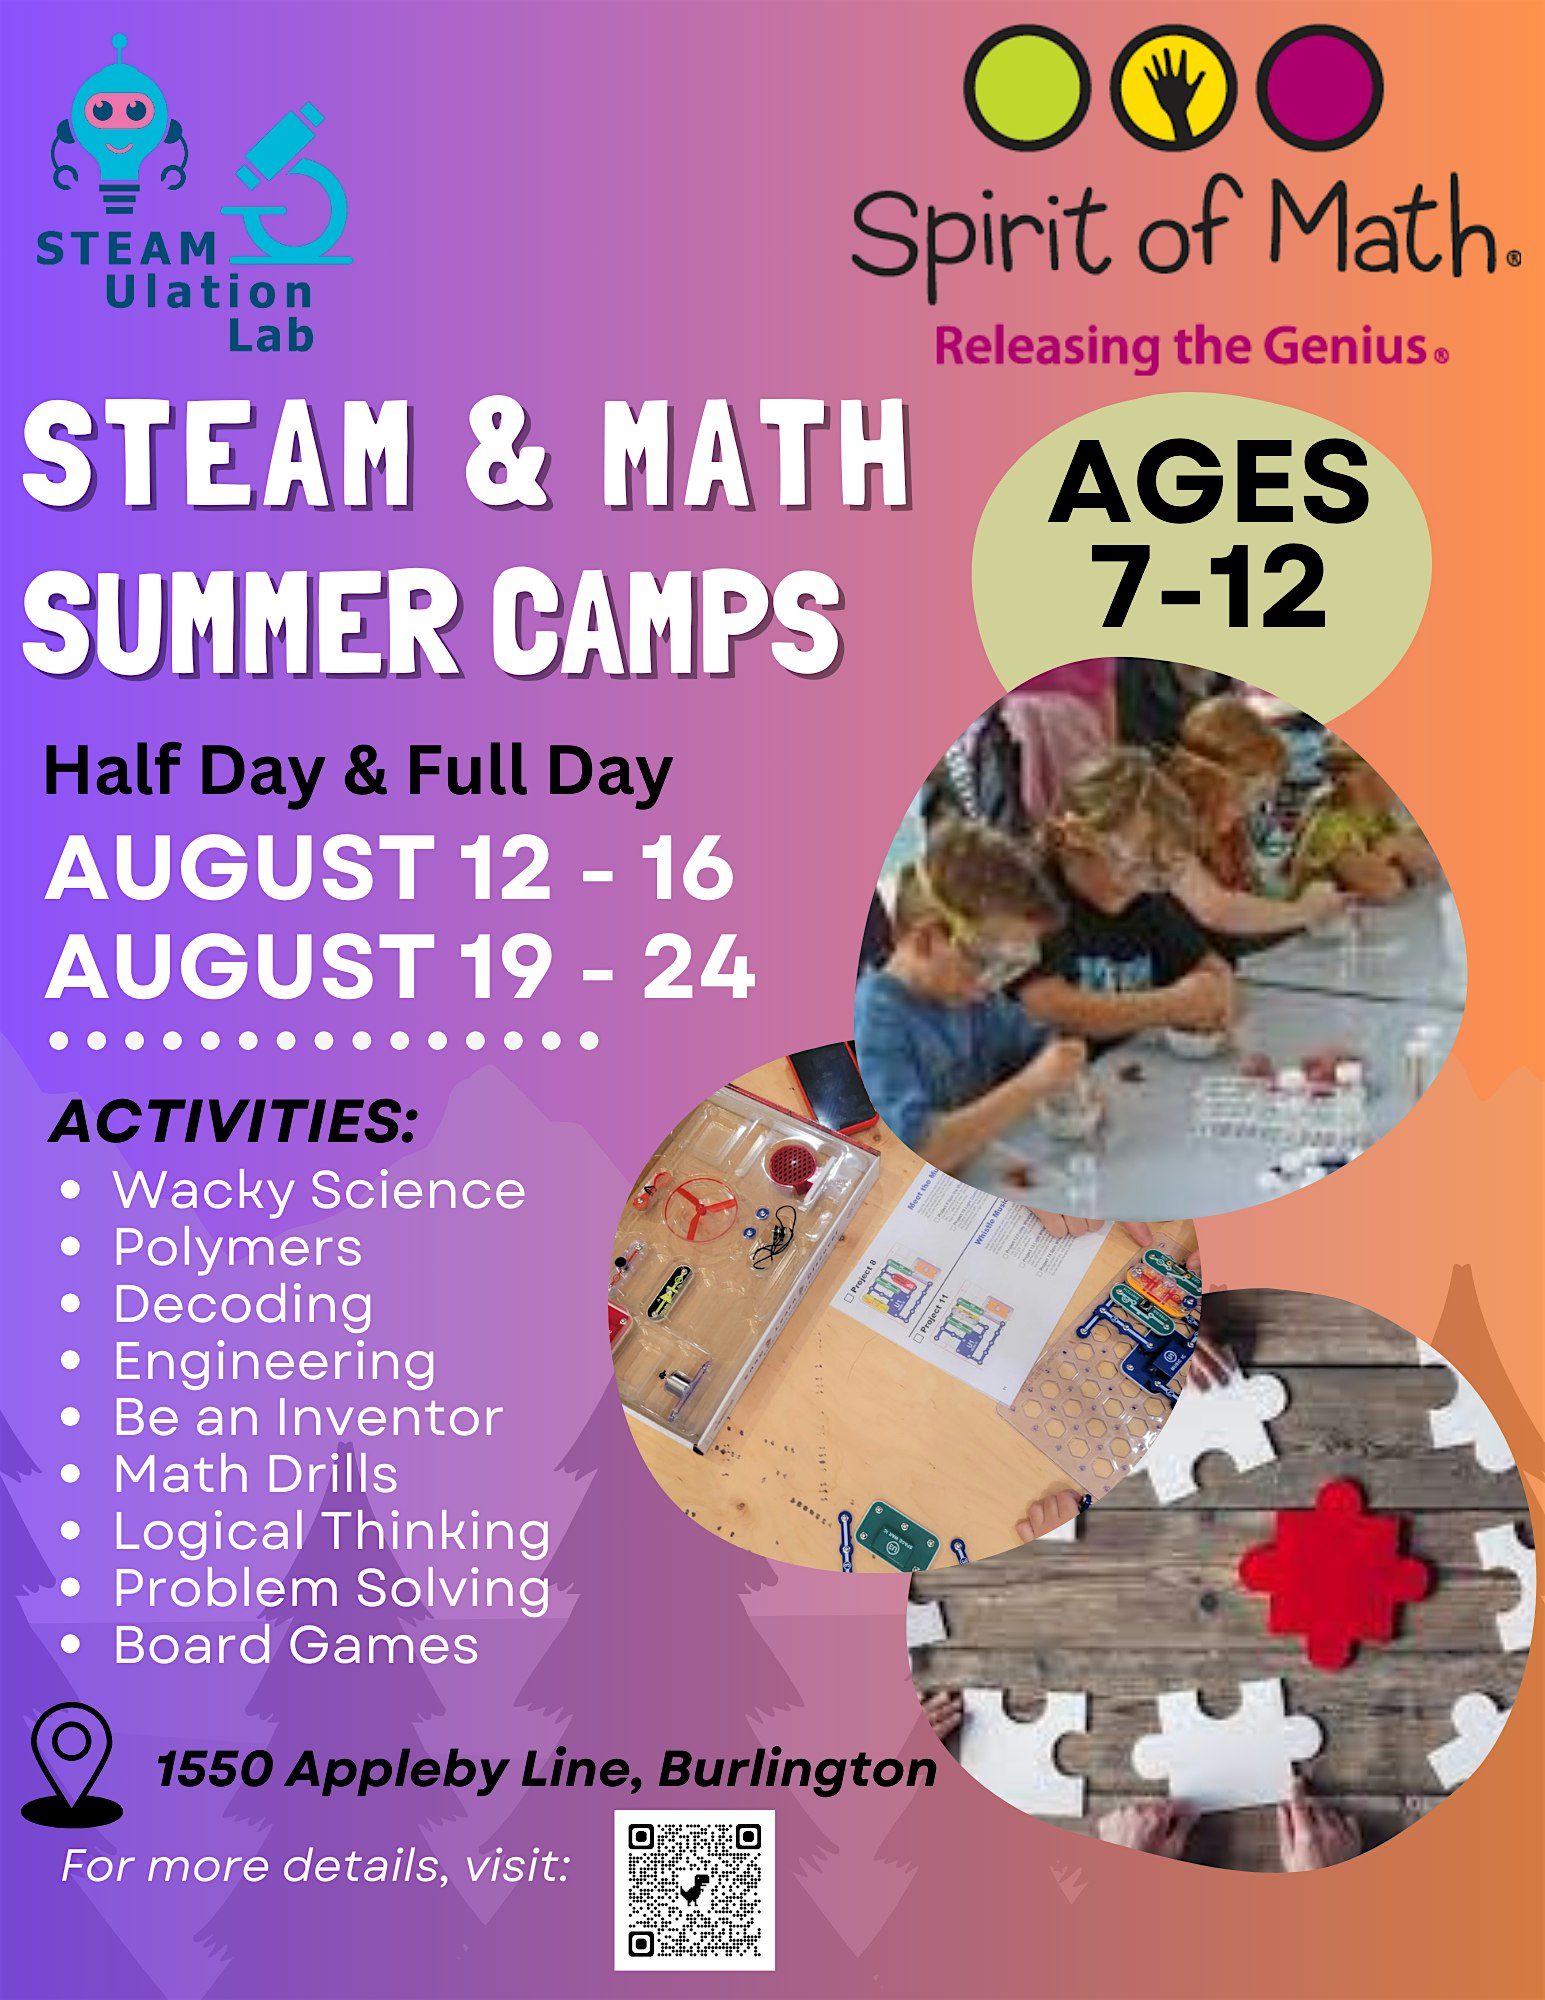 STEAM & Math Summer Camps